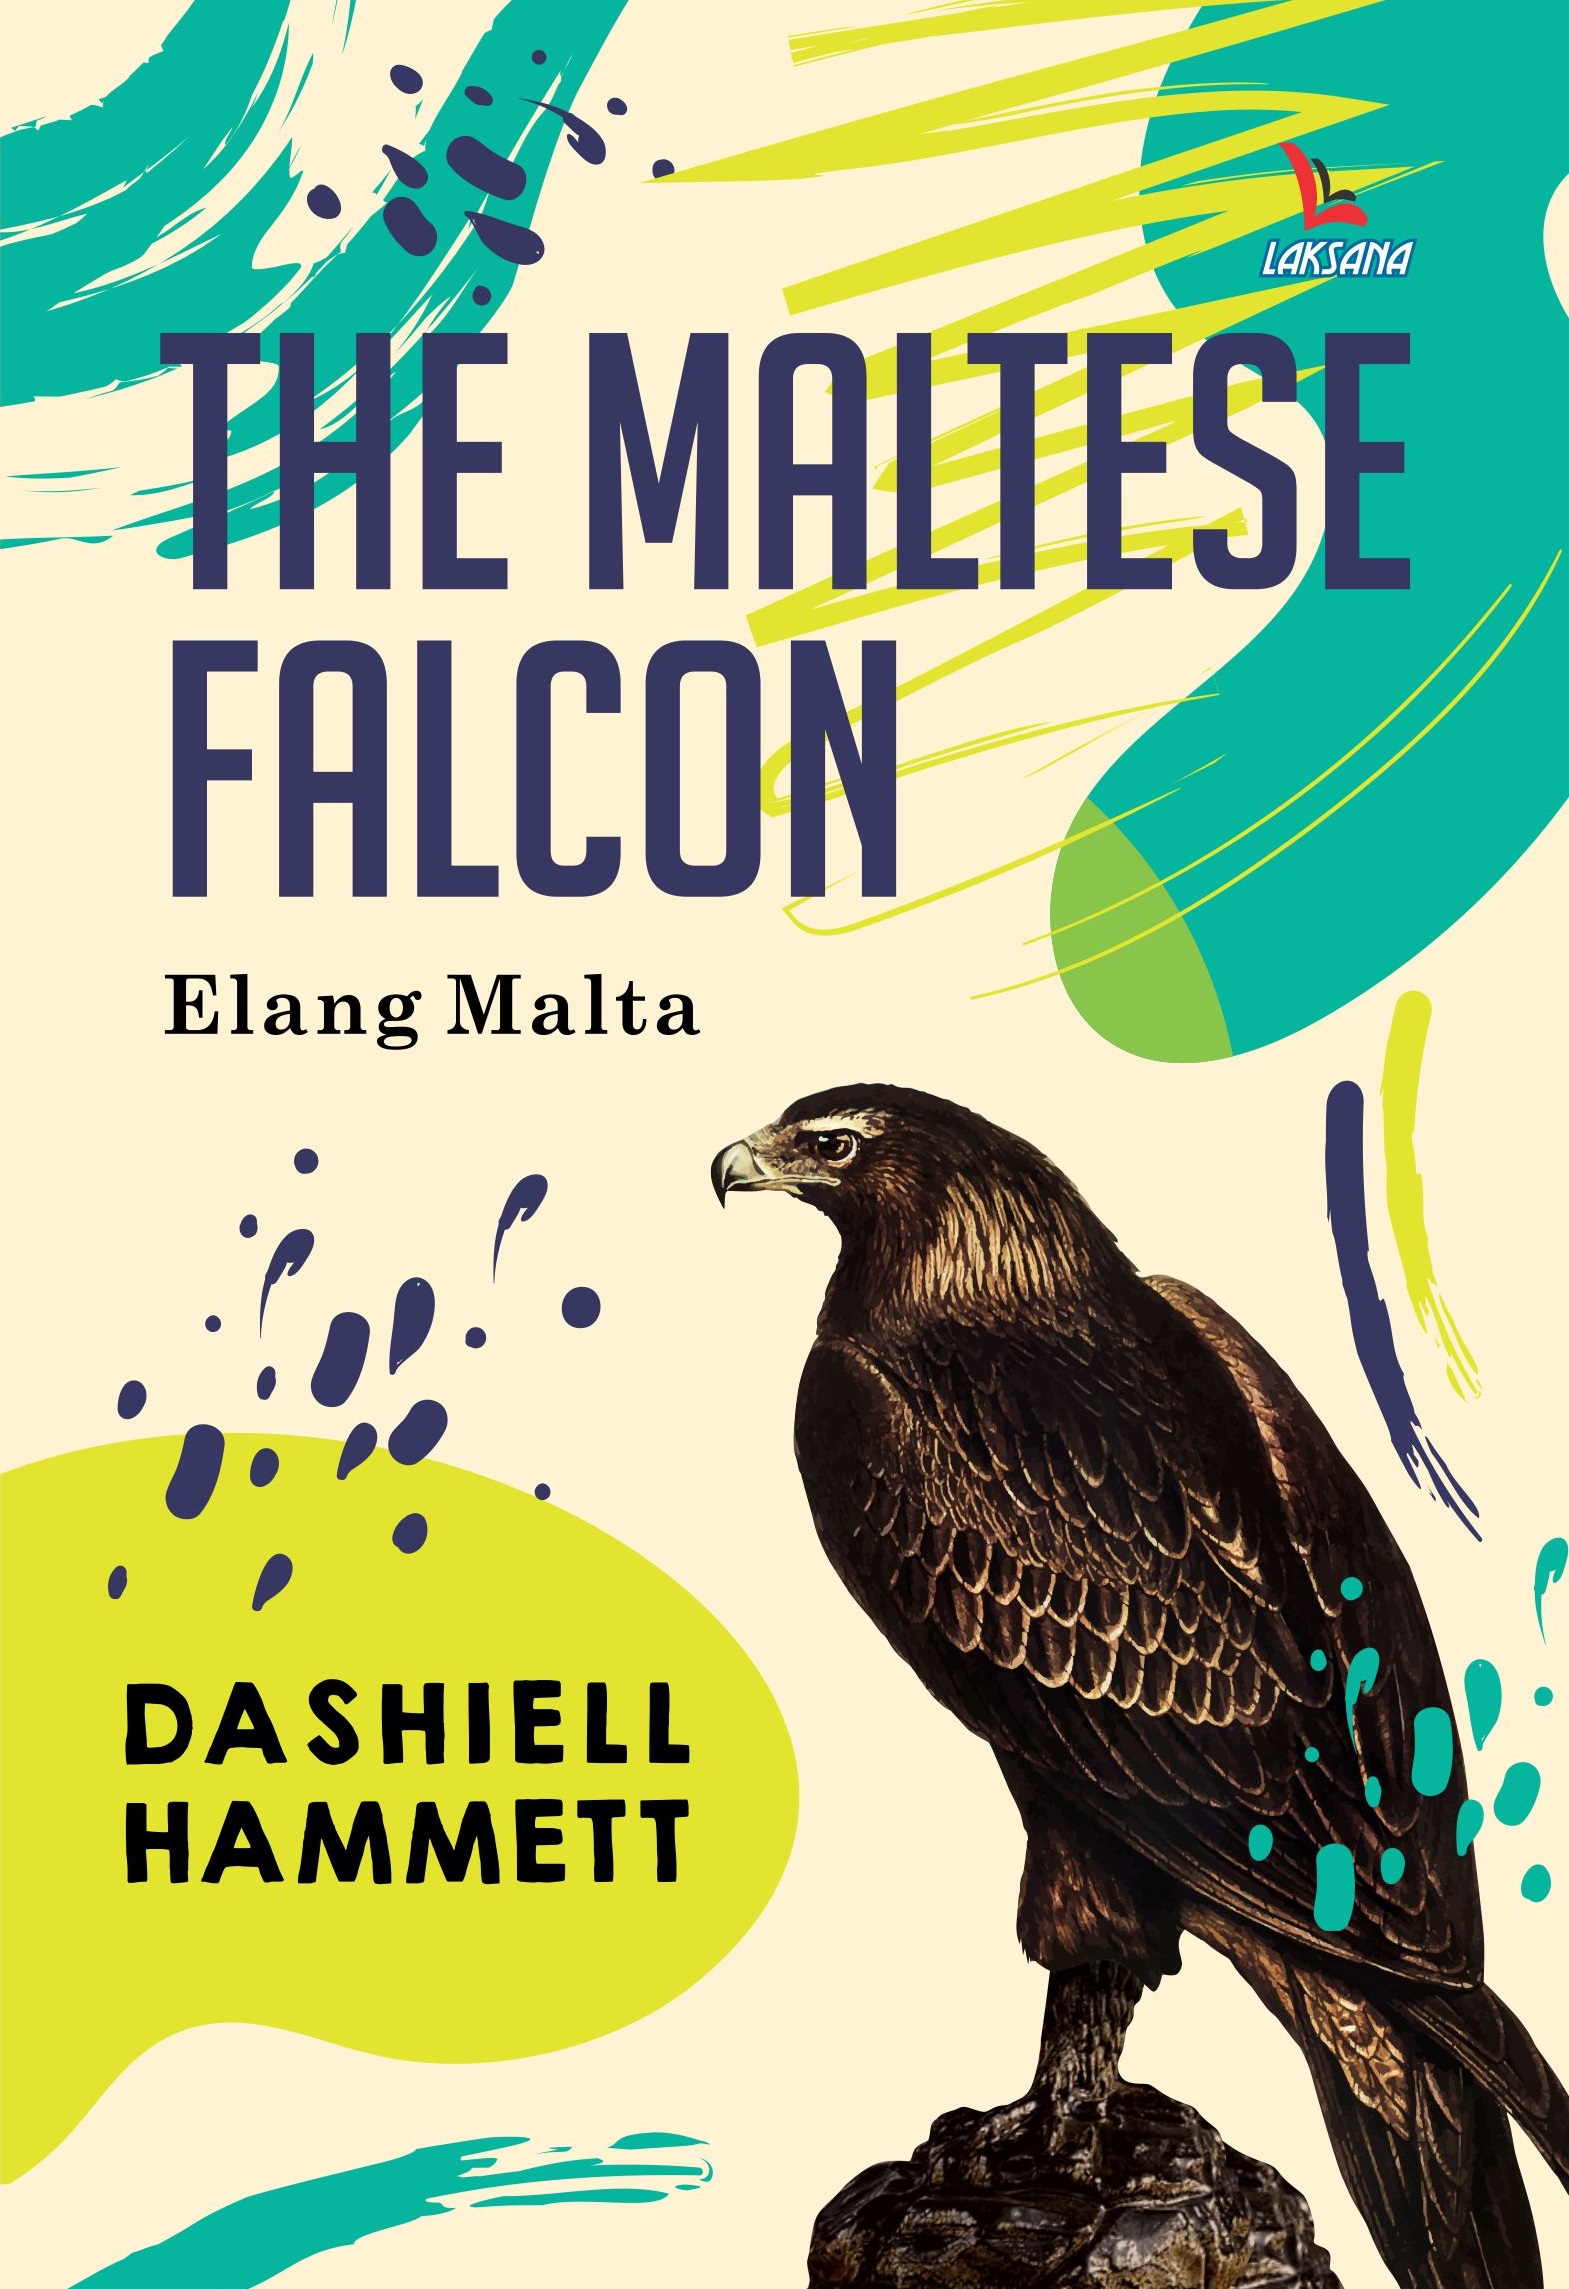 The maltese falcon = Elang Malta